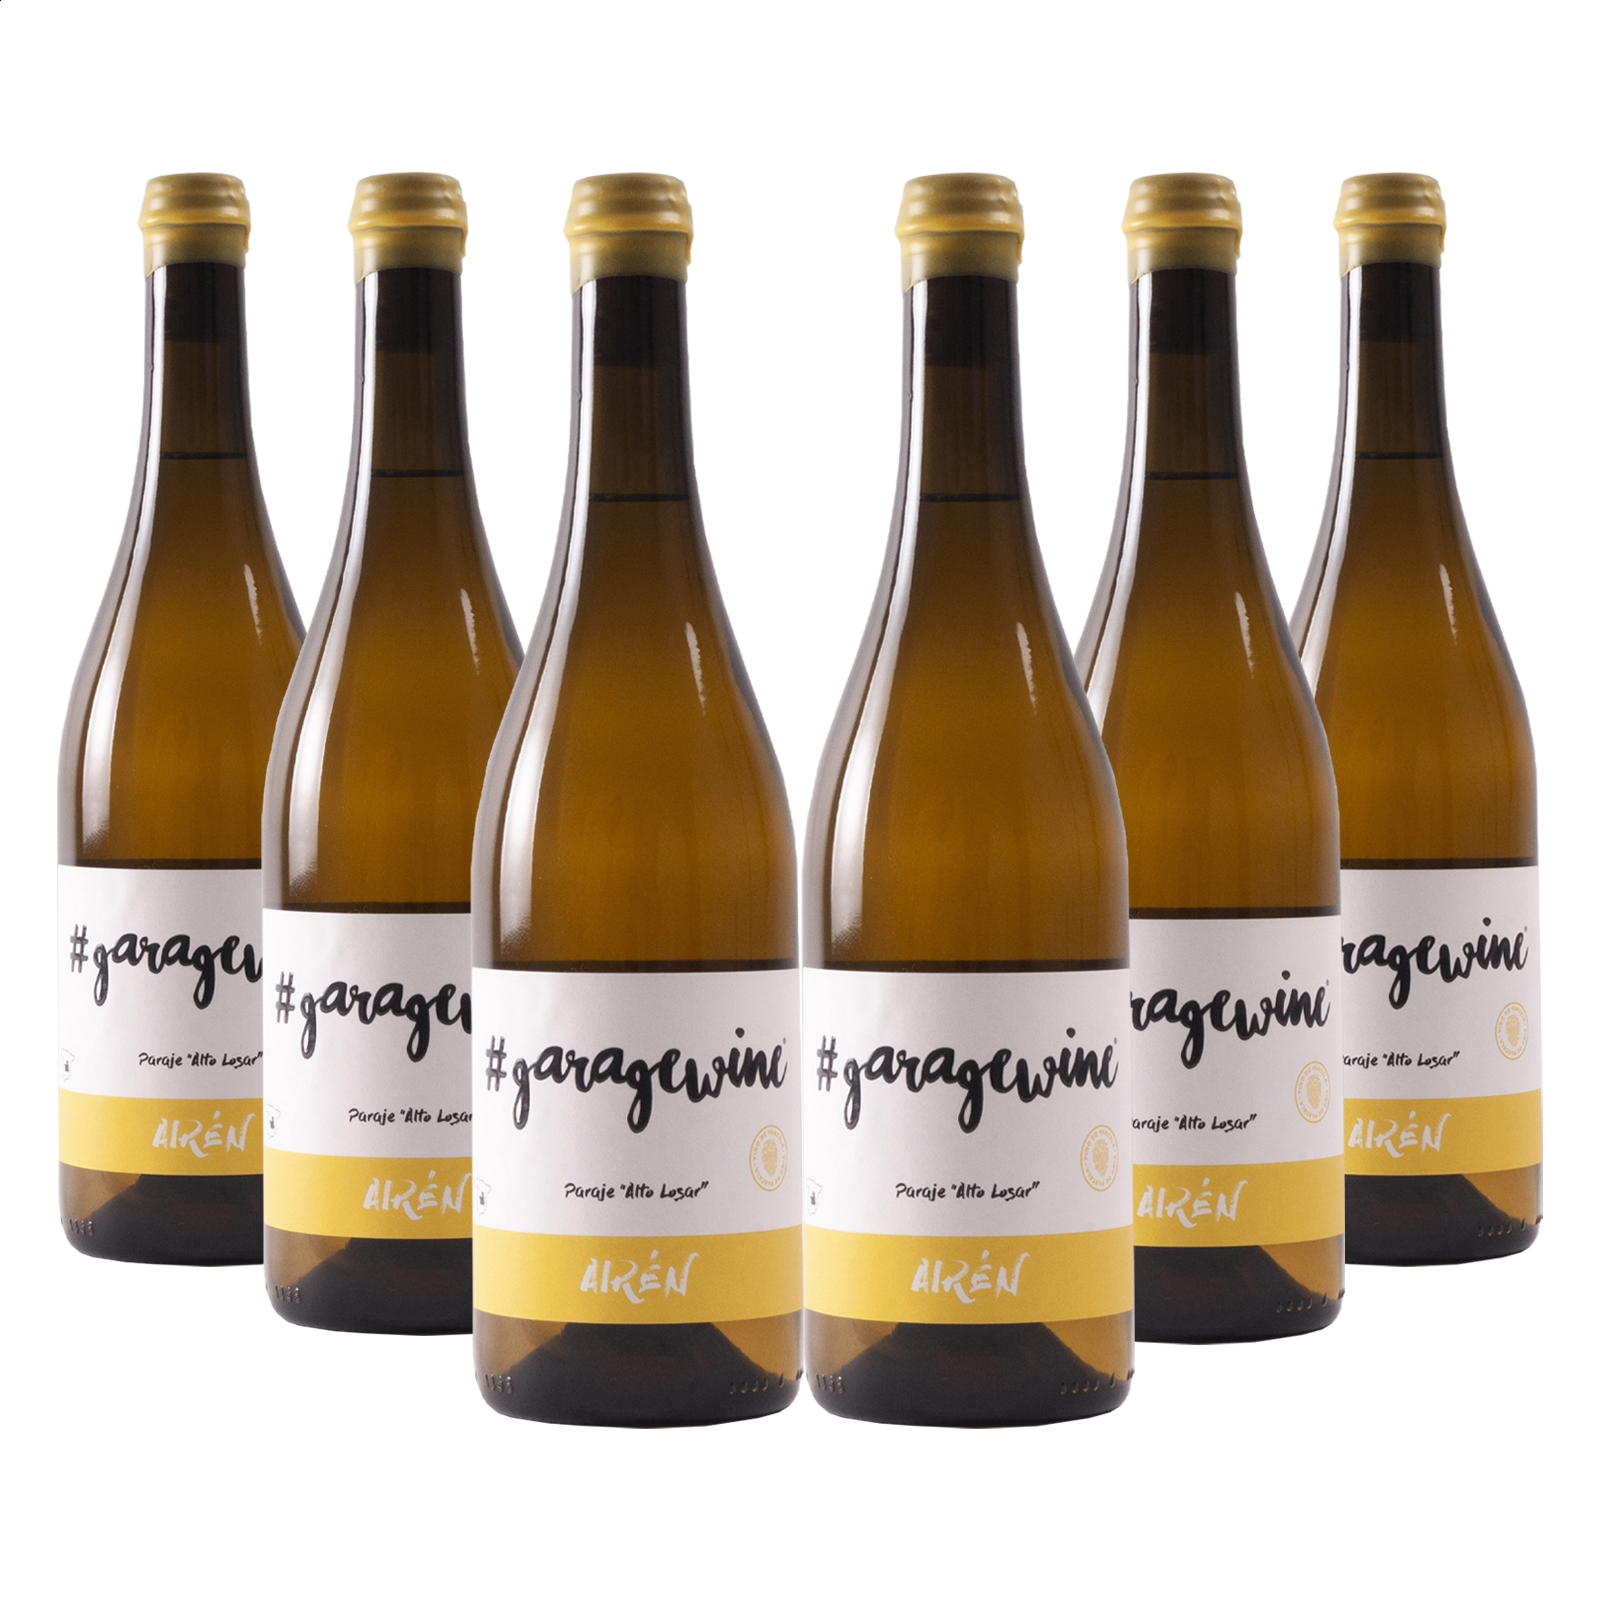 Garagewine - Airén vino blanco IGP Vino de la Tierra de Castilla 75cl, 6uds